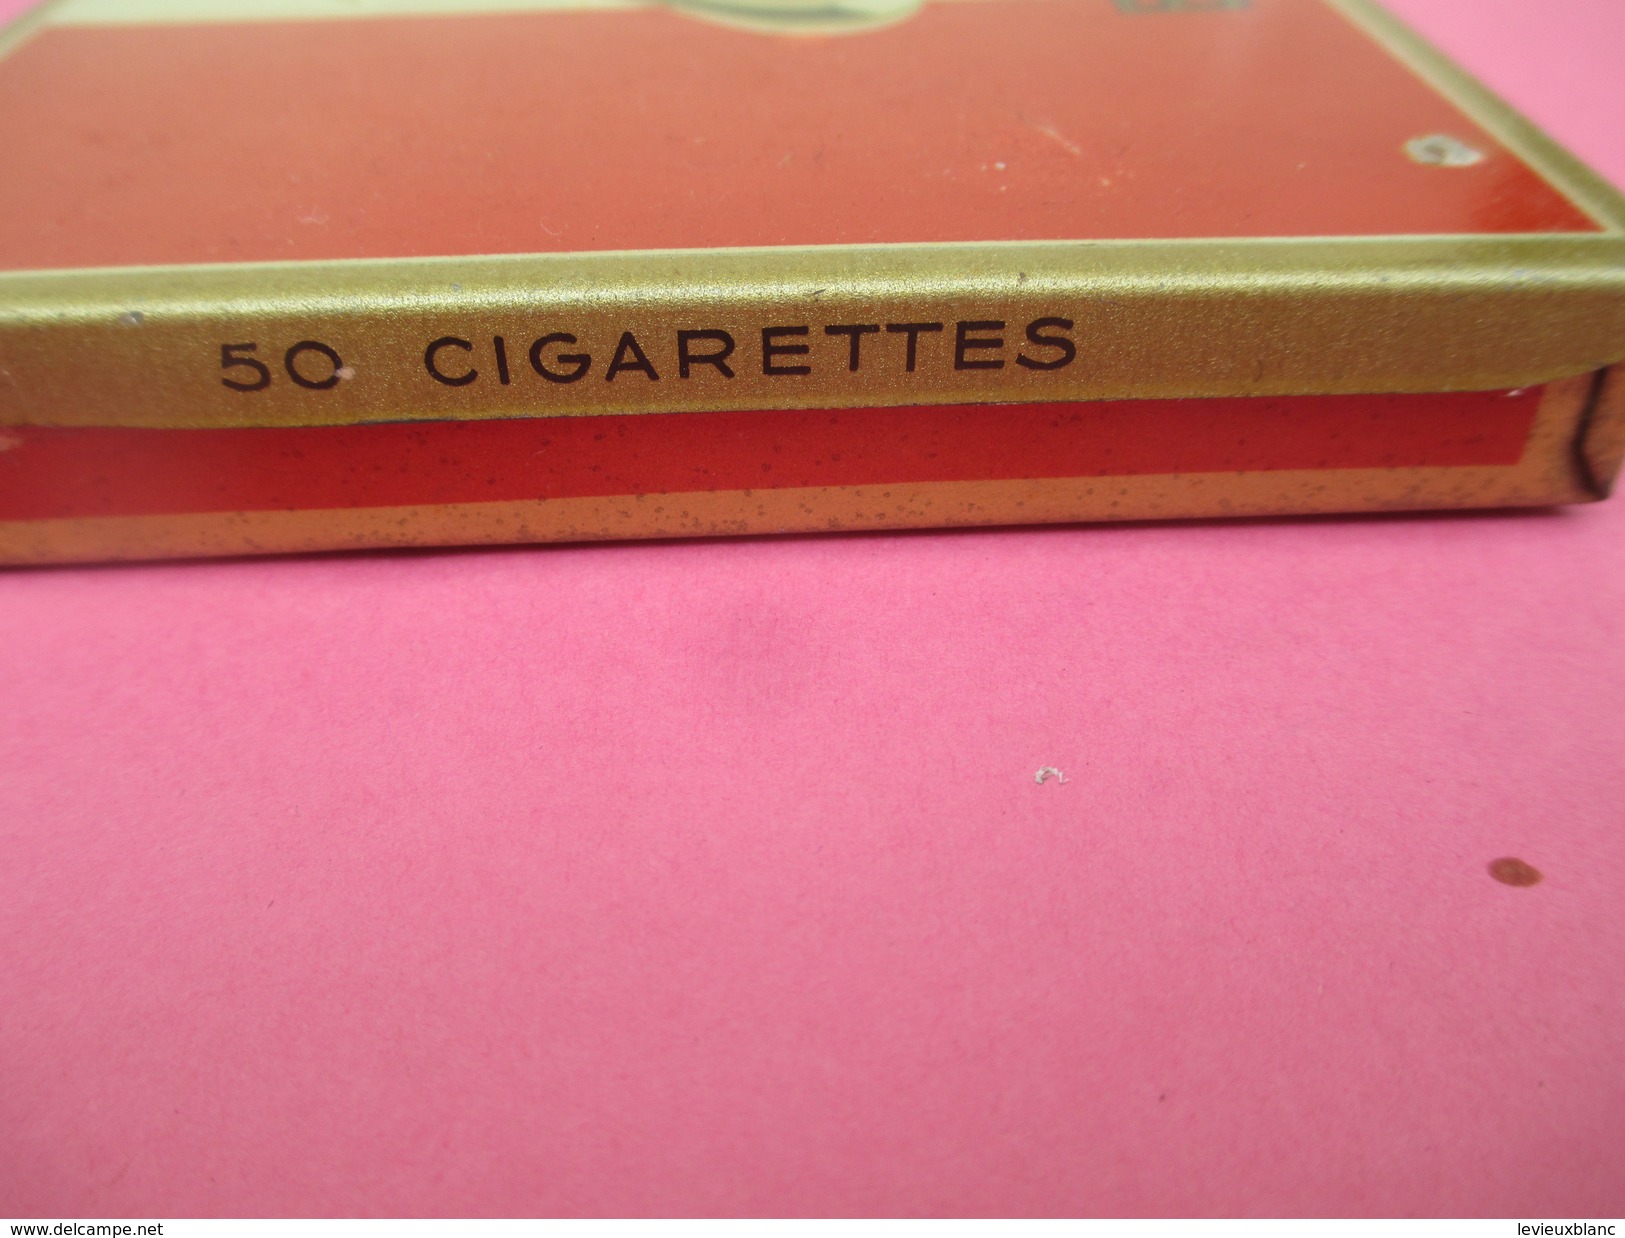 Boite Métallique Ancienne/Cigarettes /BALTO/ Goût Américain / Régie Française/ Vers 1950 -1960          BFPP131 - Boxes